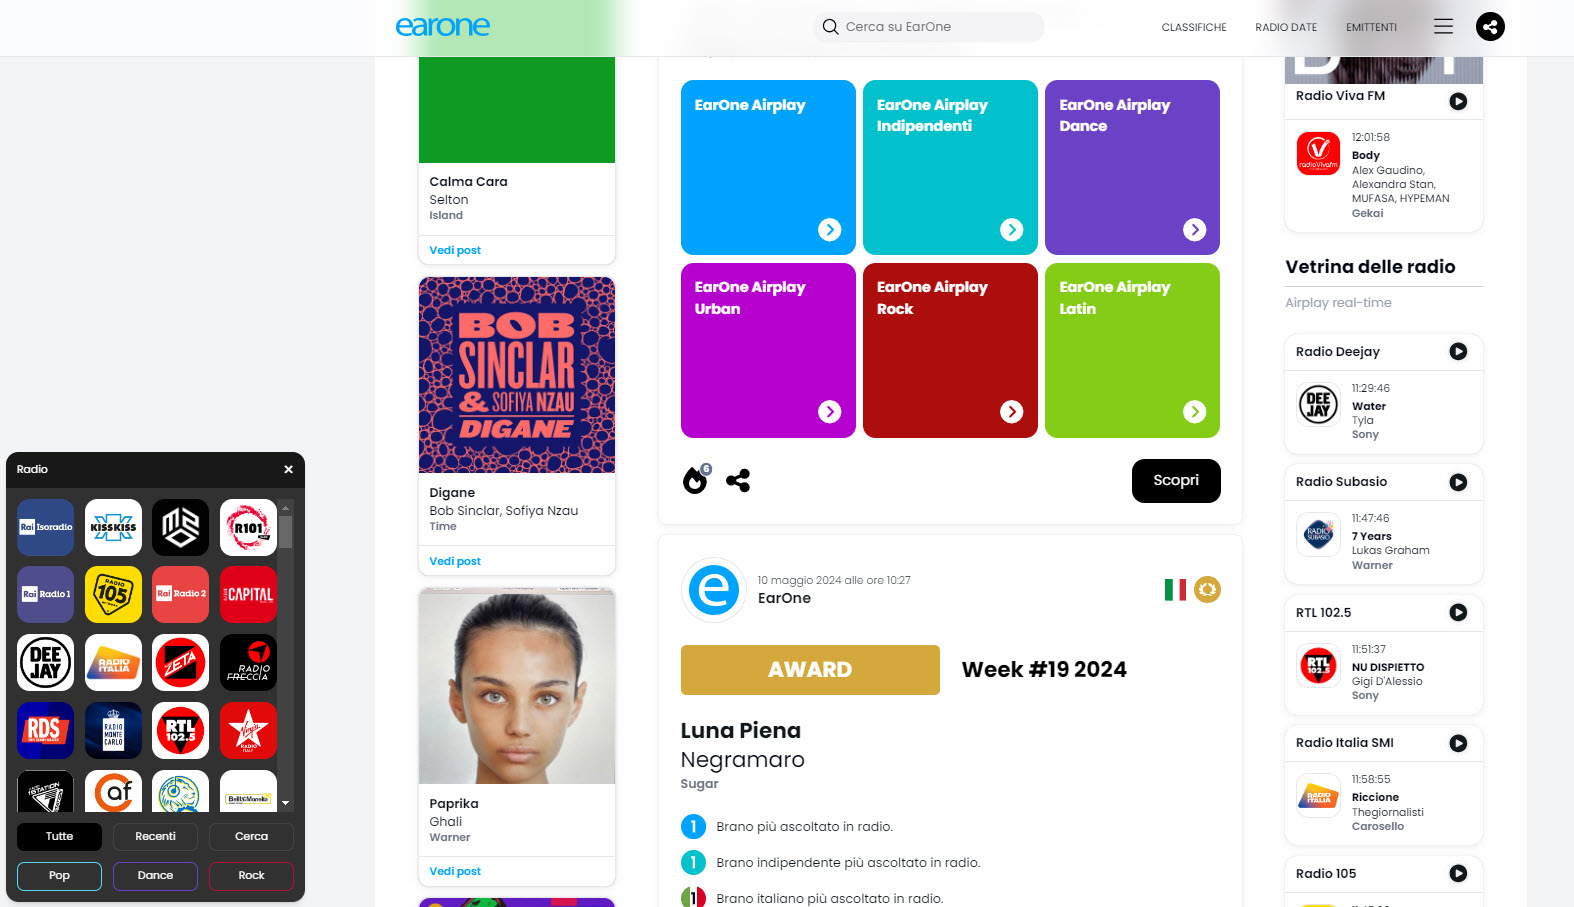 EarOne lancia la nuova piattaforma www.earone.com che innova le connessioni tra musica, artisti e radio